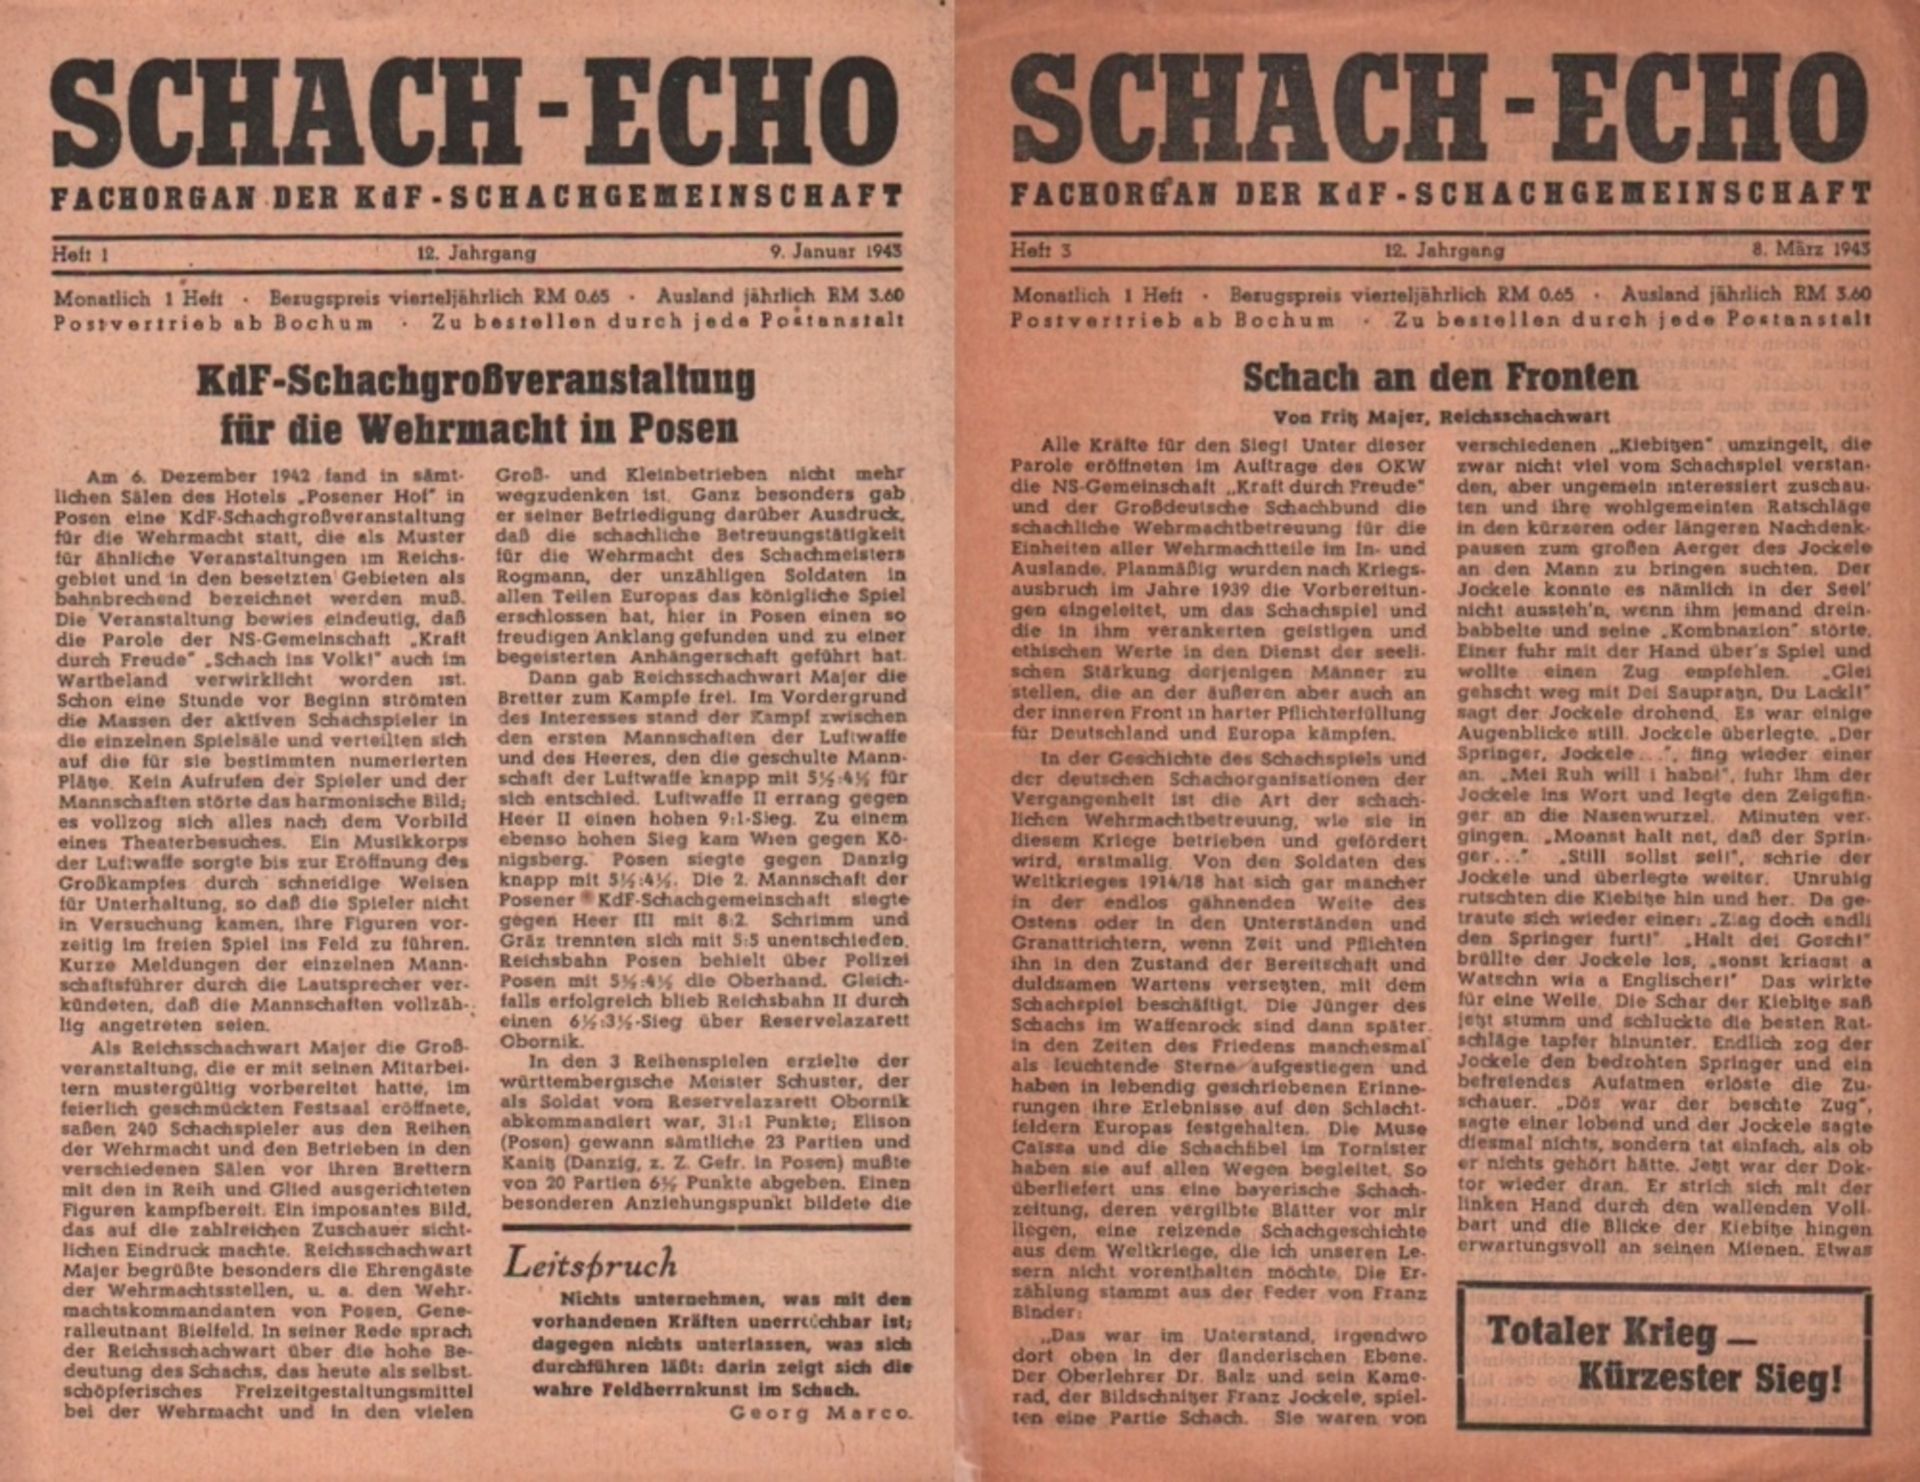 Schach - Echo. Fachorgan der KdF - Schachgemeinschaft. Herausgeber: Otto Katzer. 12. Jahrgang (